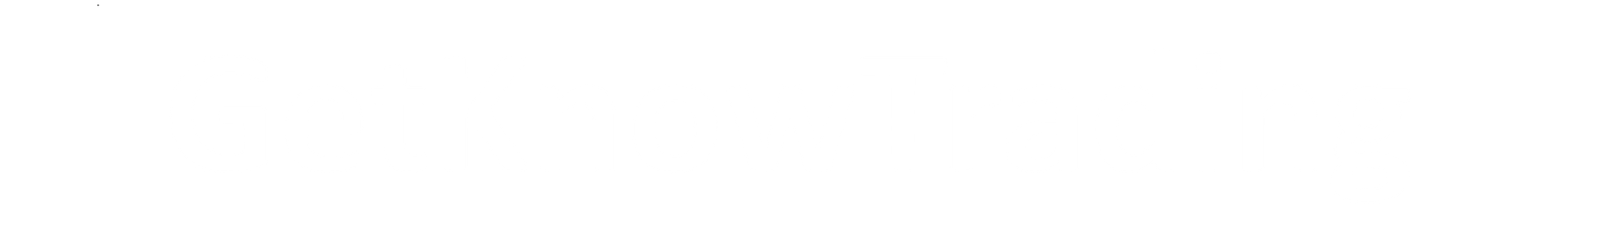 GKT-logo-white_1